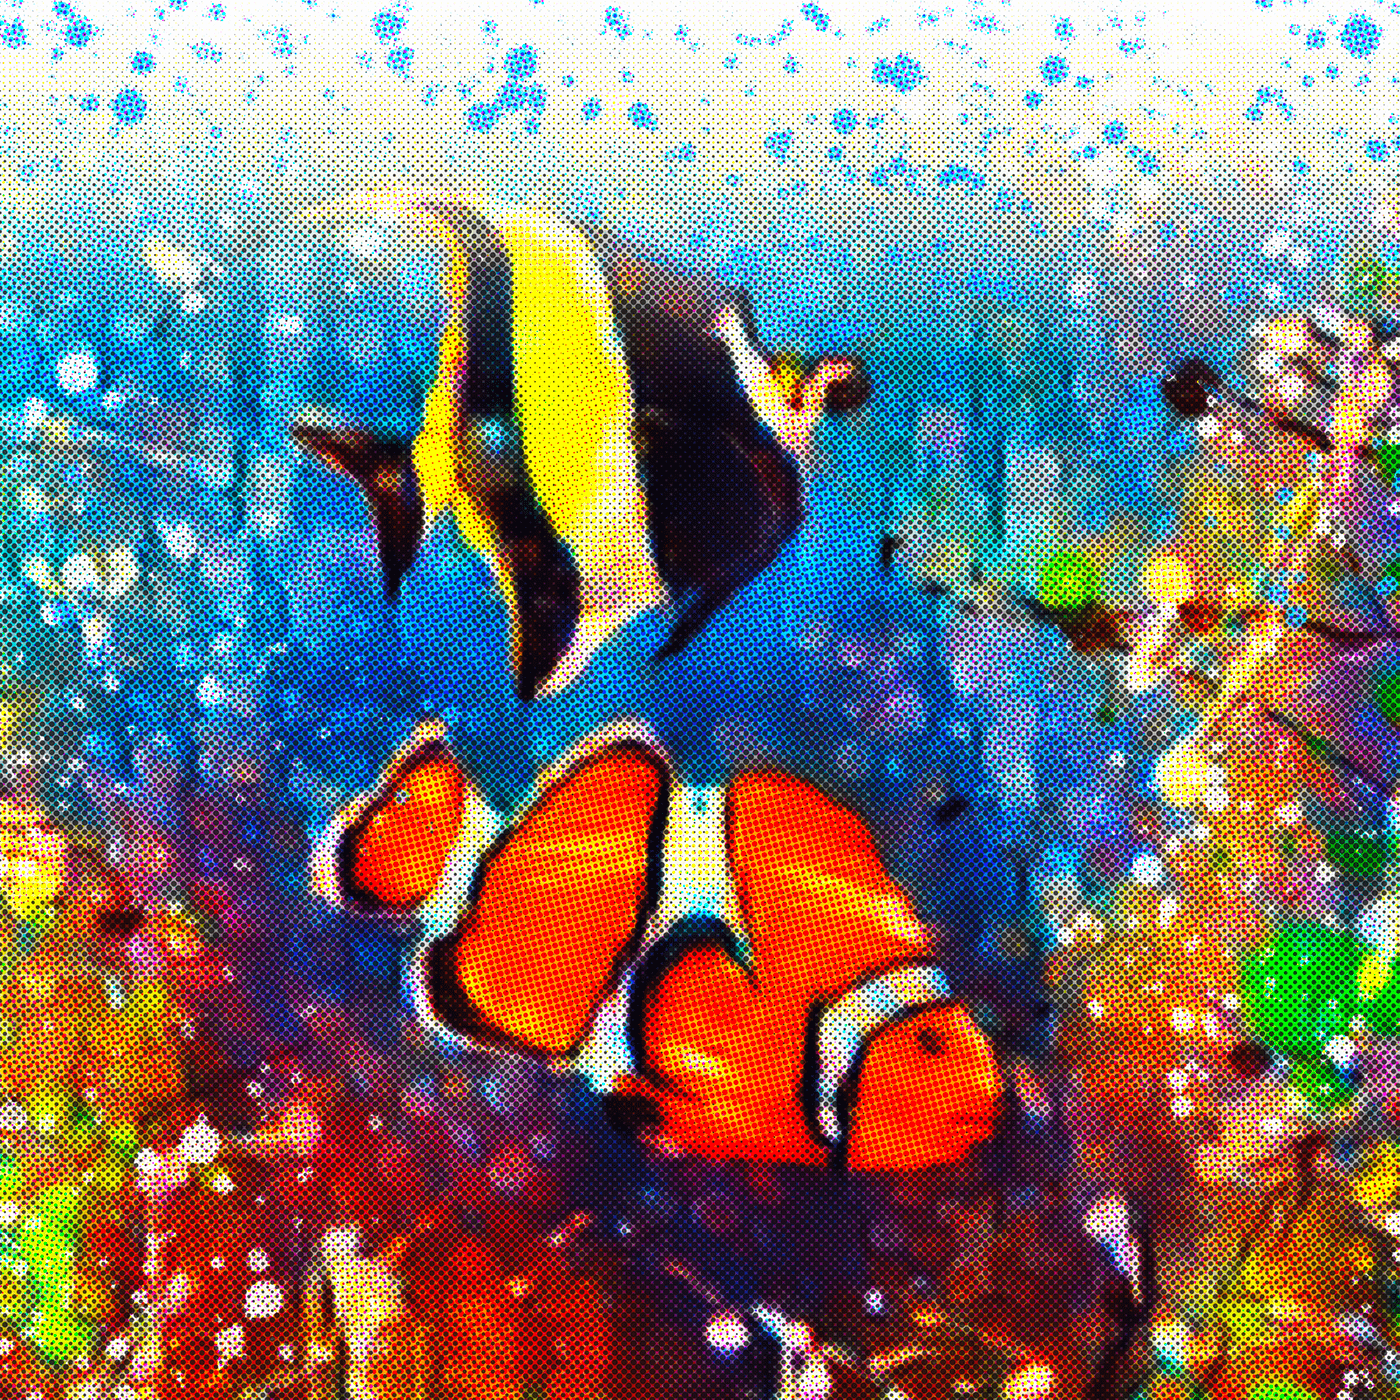 clown fish marine art Marine fish